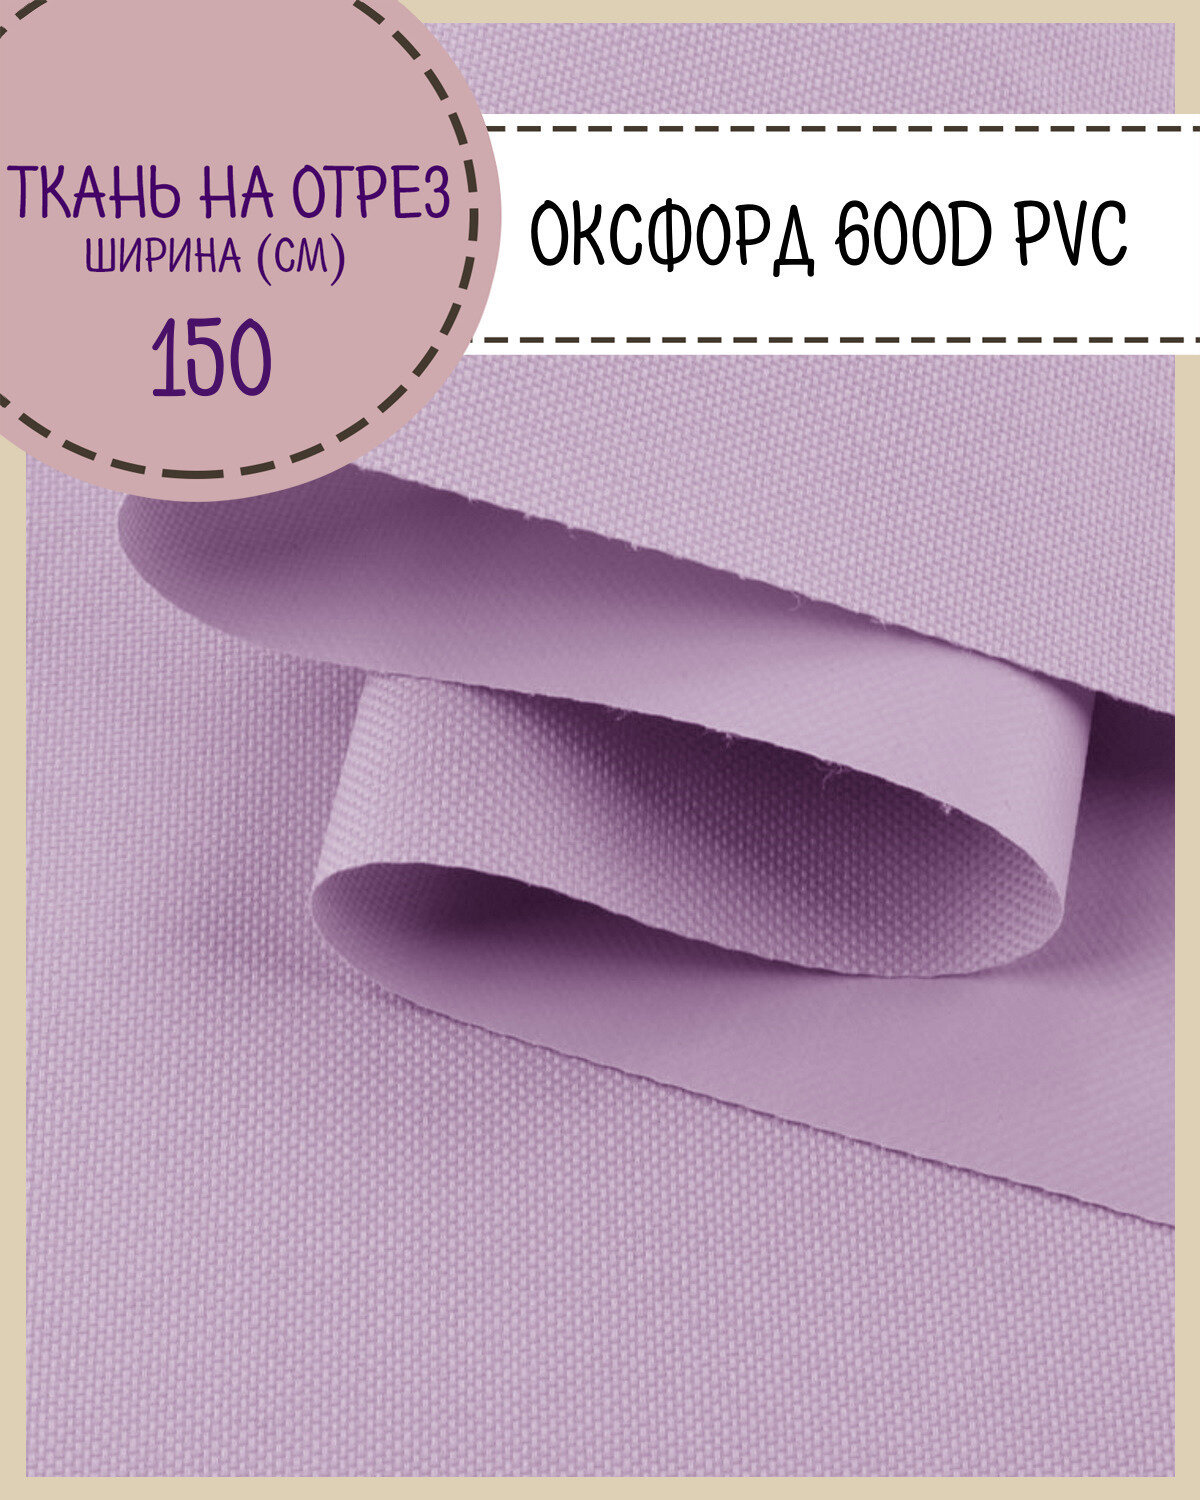 Ткань Оксфорд Oxford 600D PVC (ПВХ), водоотталкивающая, цв. сиреневый , на отрез, цена за пог. метр